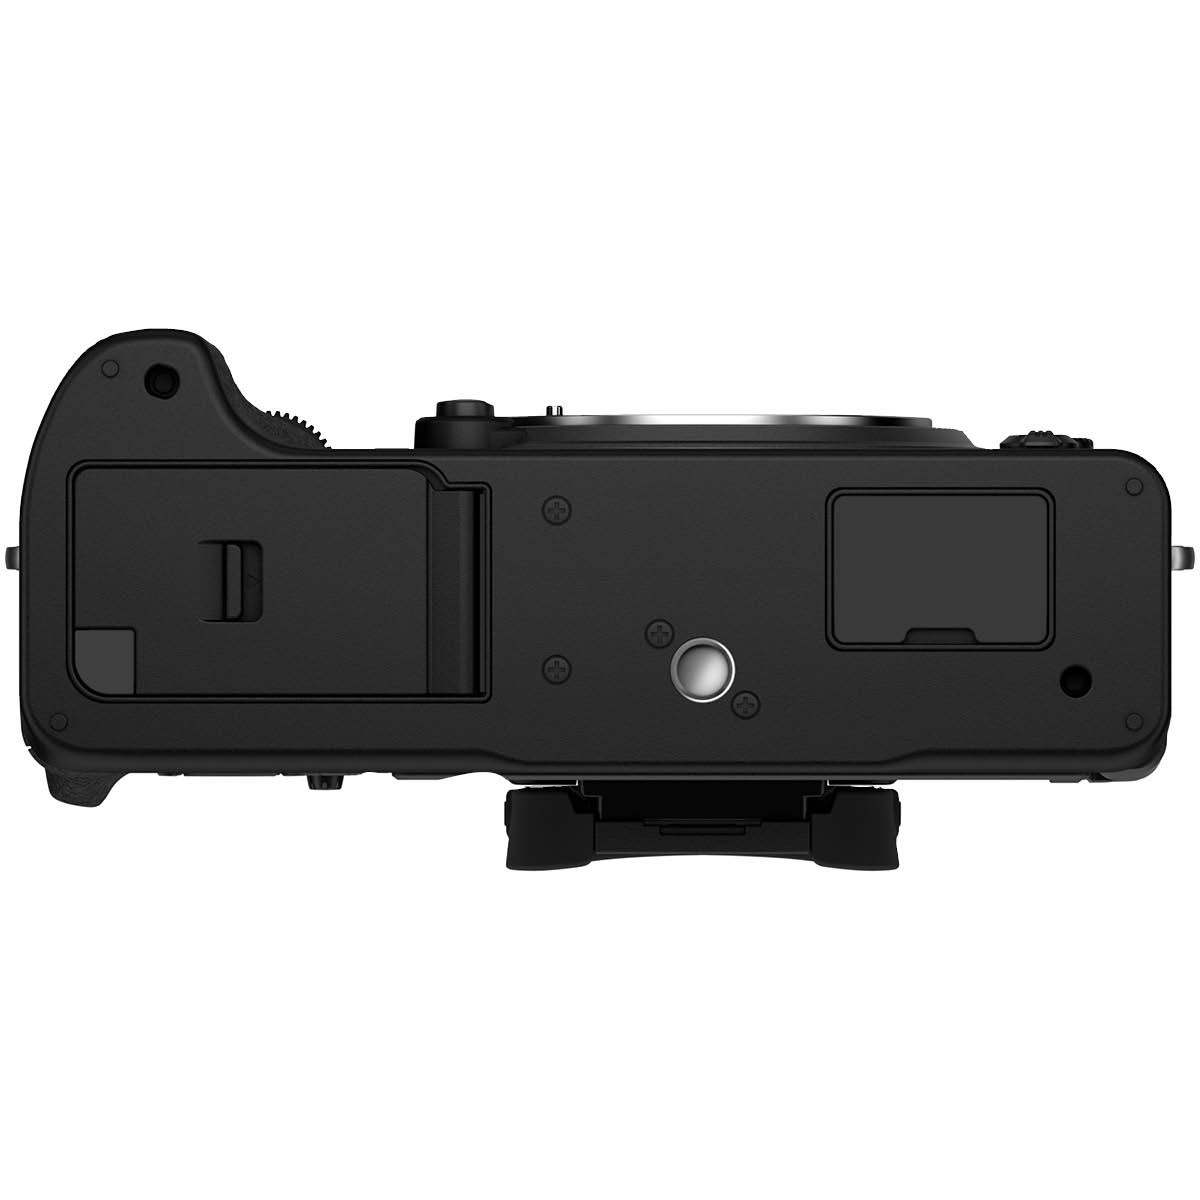 Fujifilm X-T4 Gehäuse schwarz